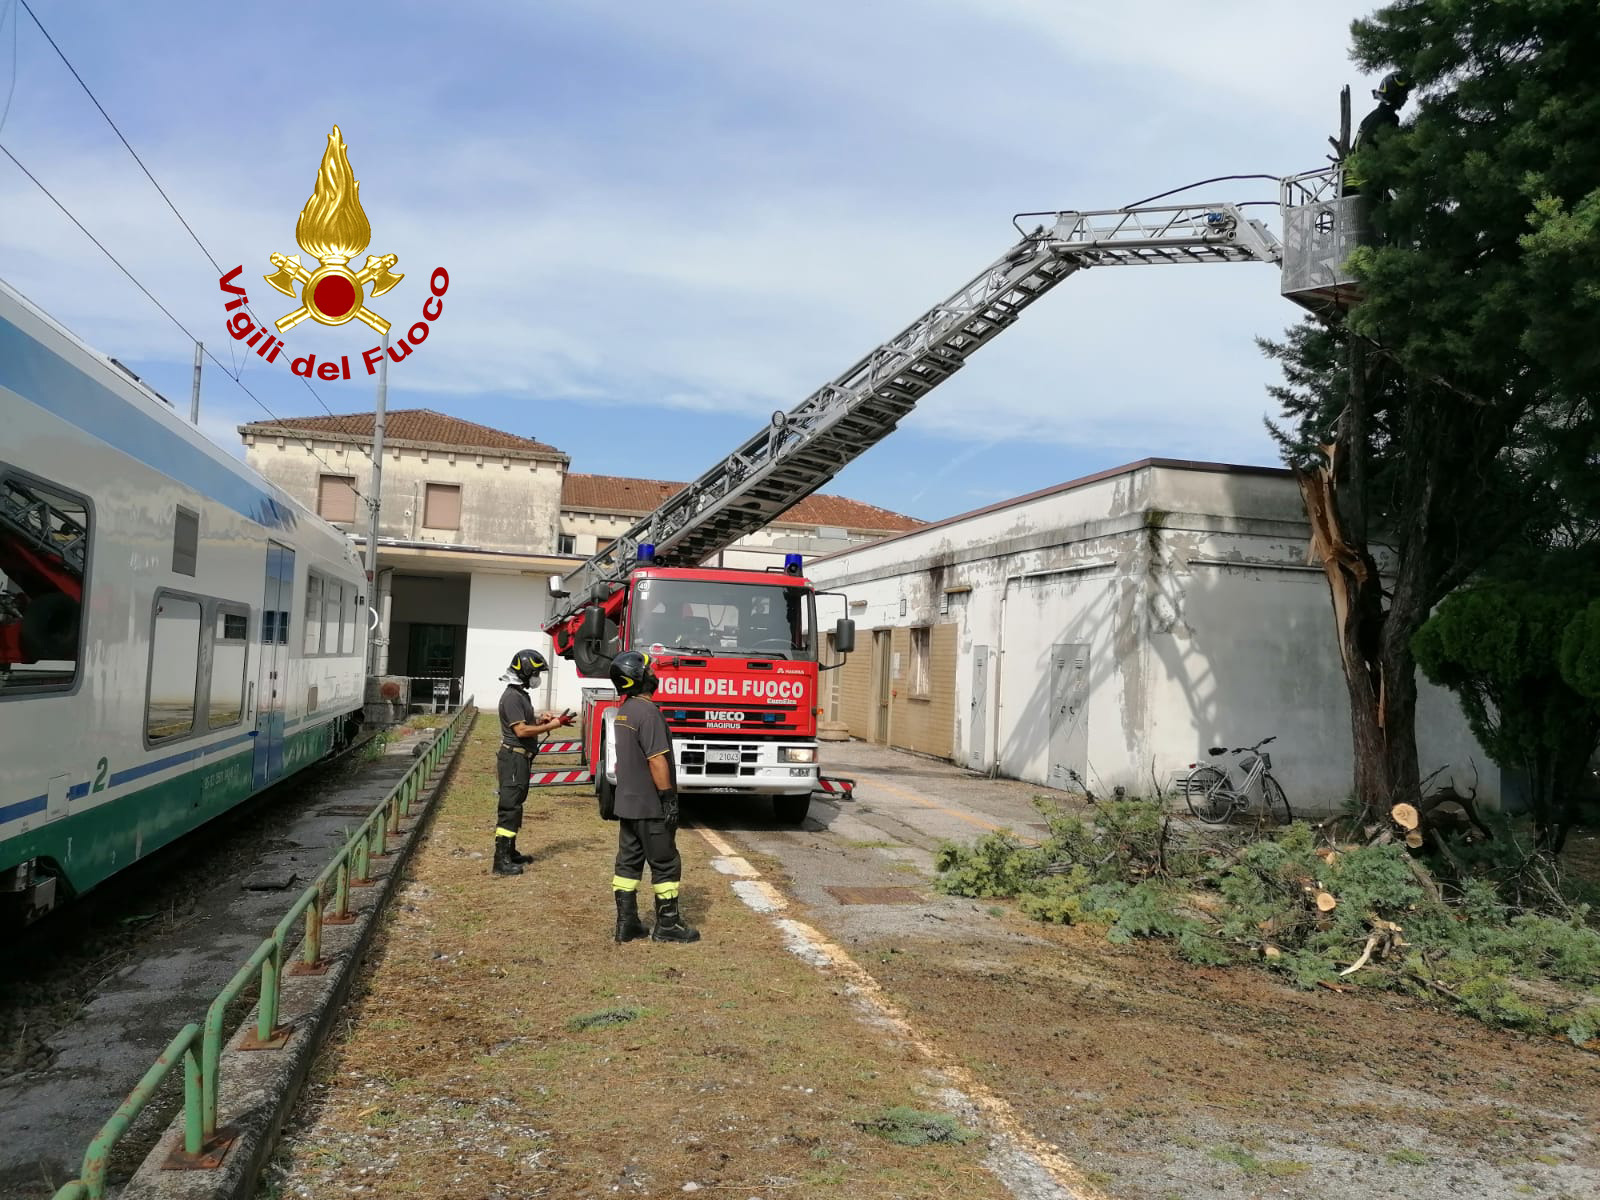 Maltempo in Veneto: oltre 180 interventi dei Vigili del fuoco nella regione - FOTO